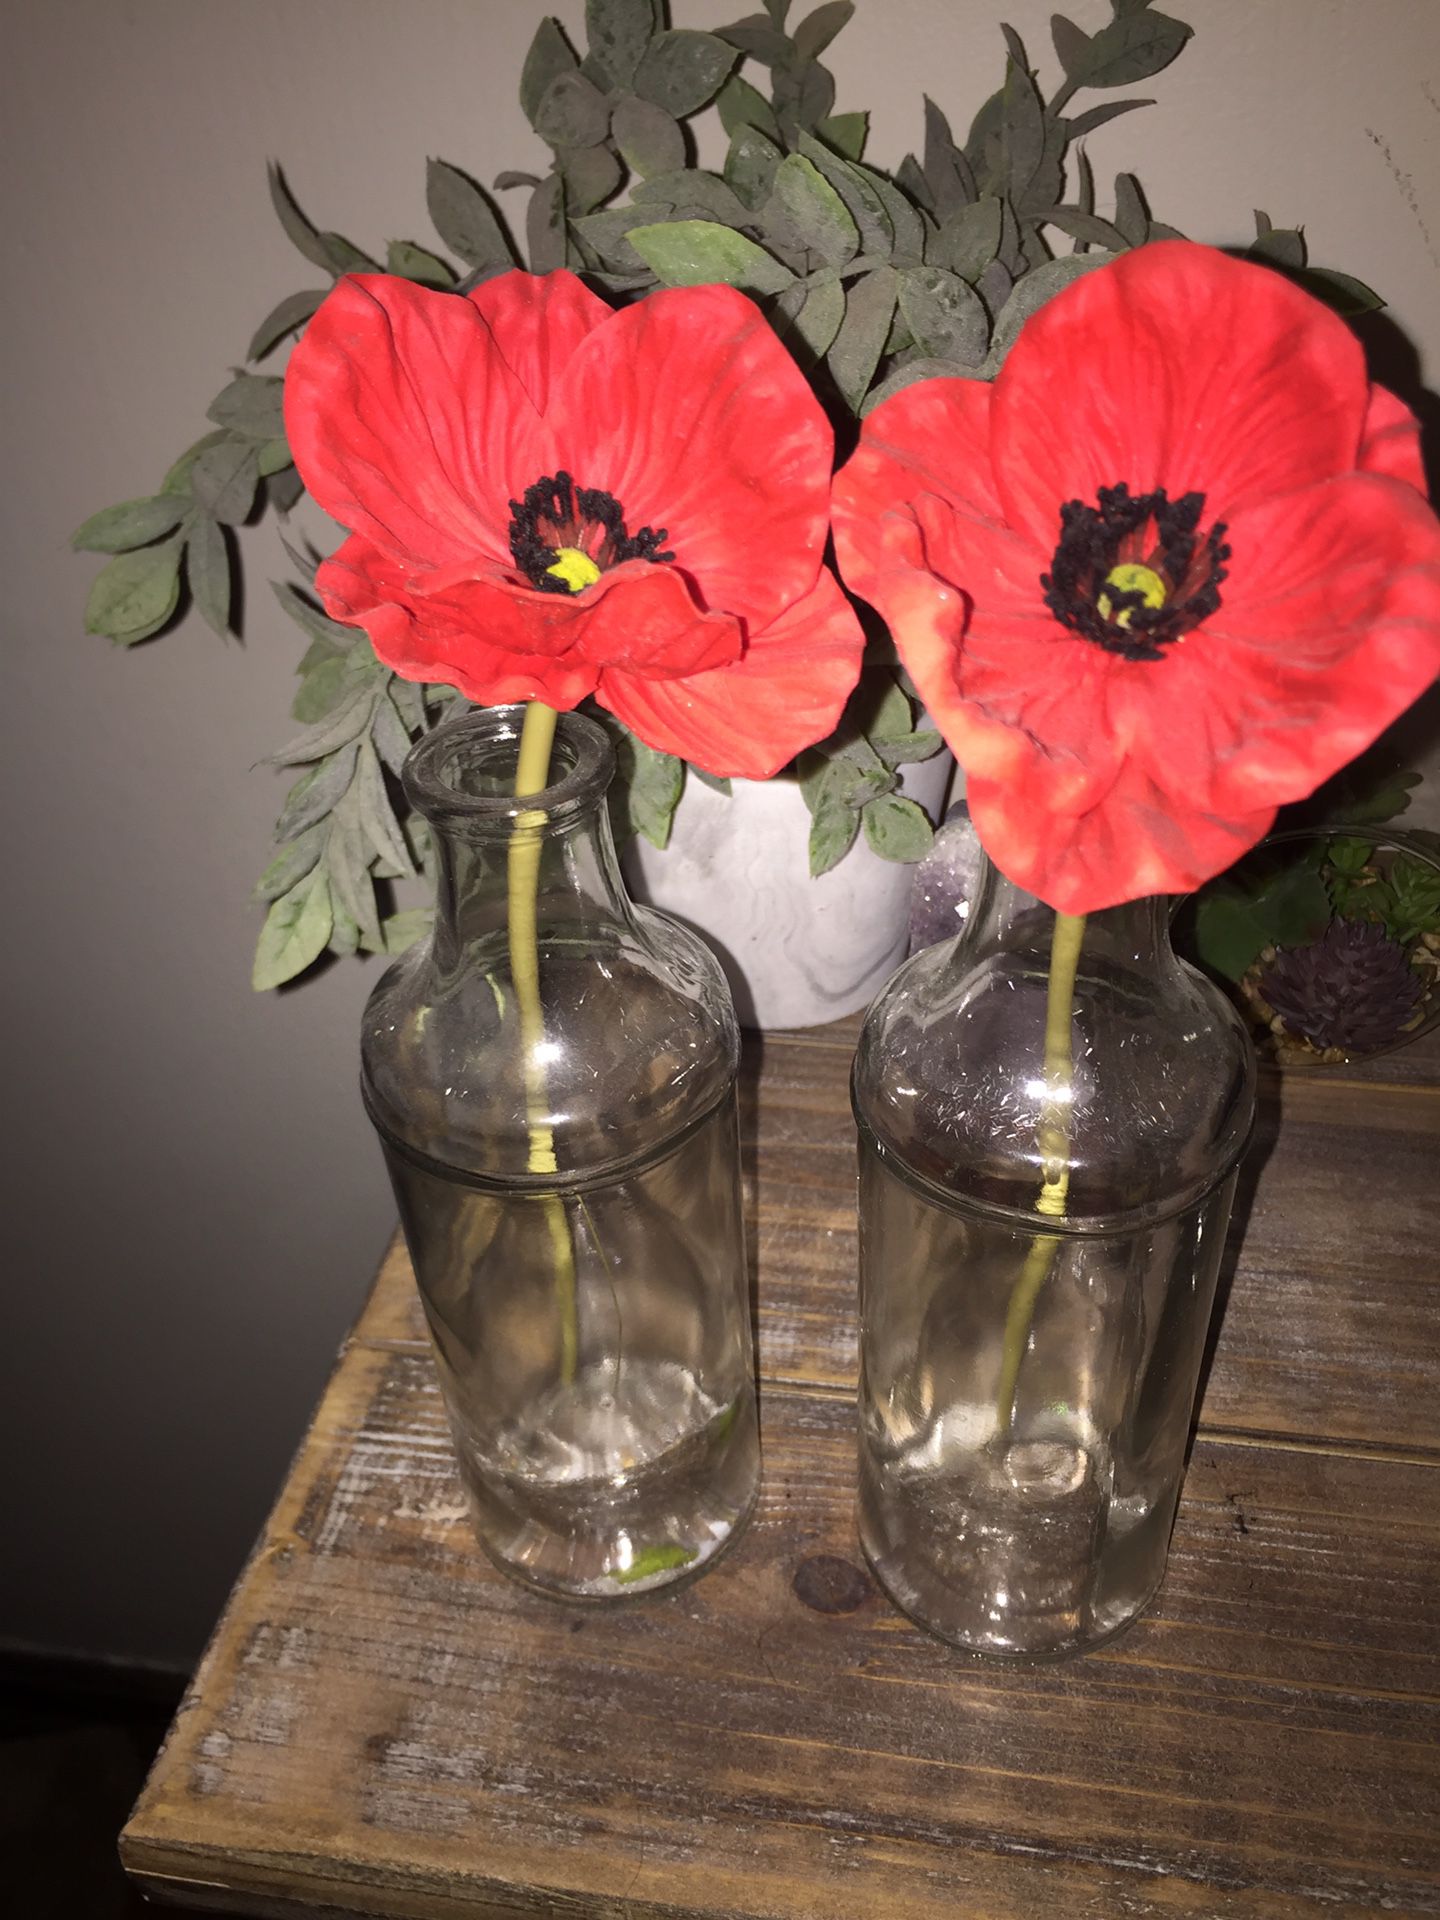 Flower vases with fake flower